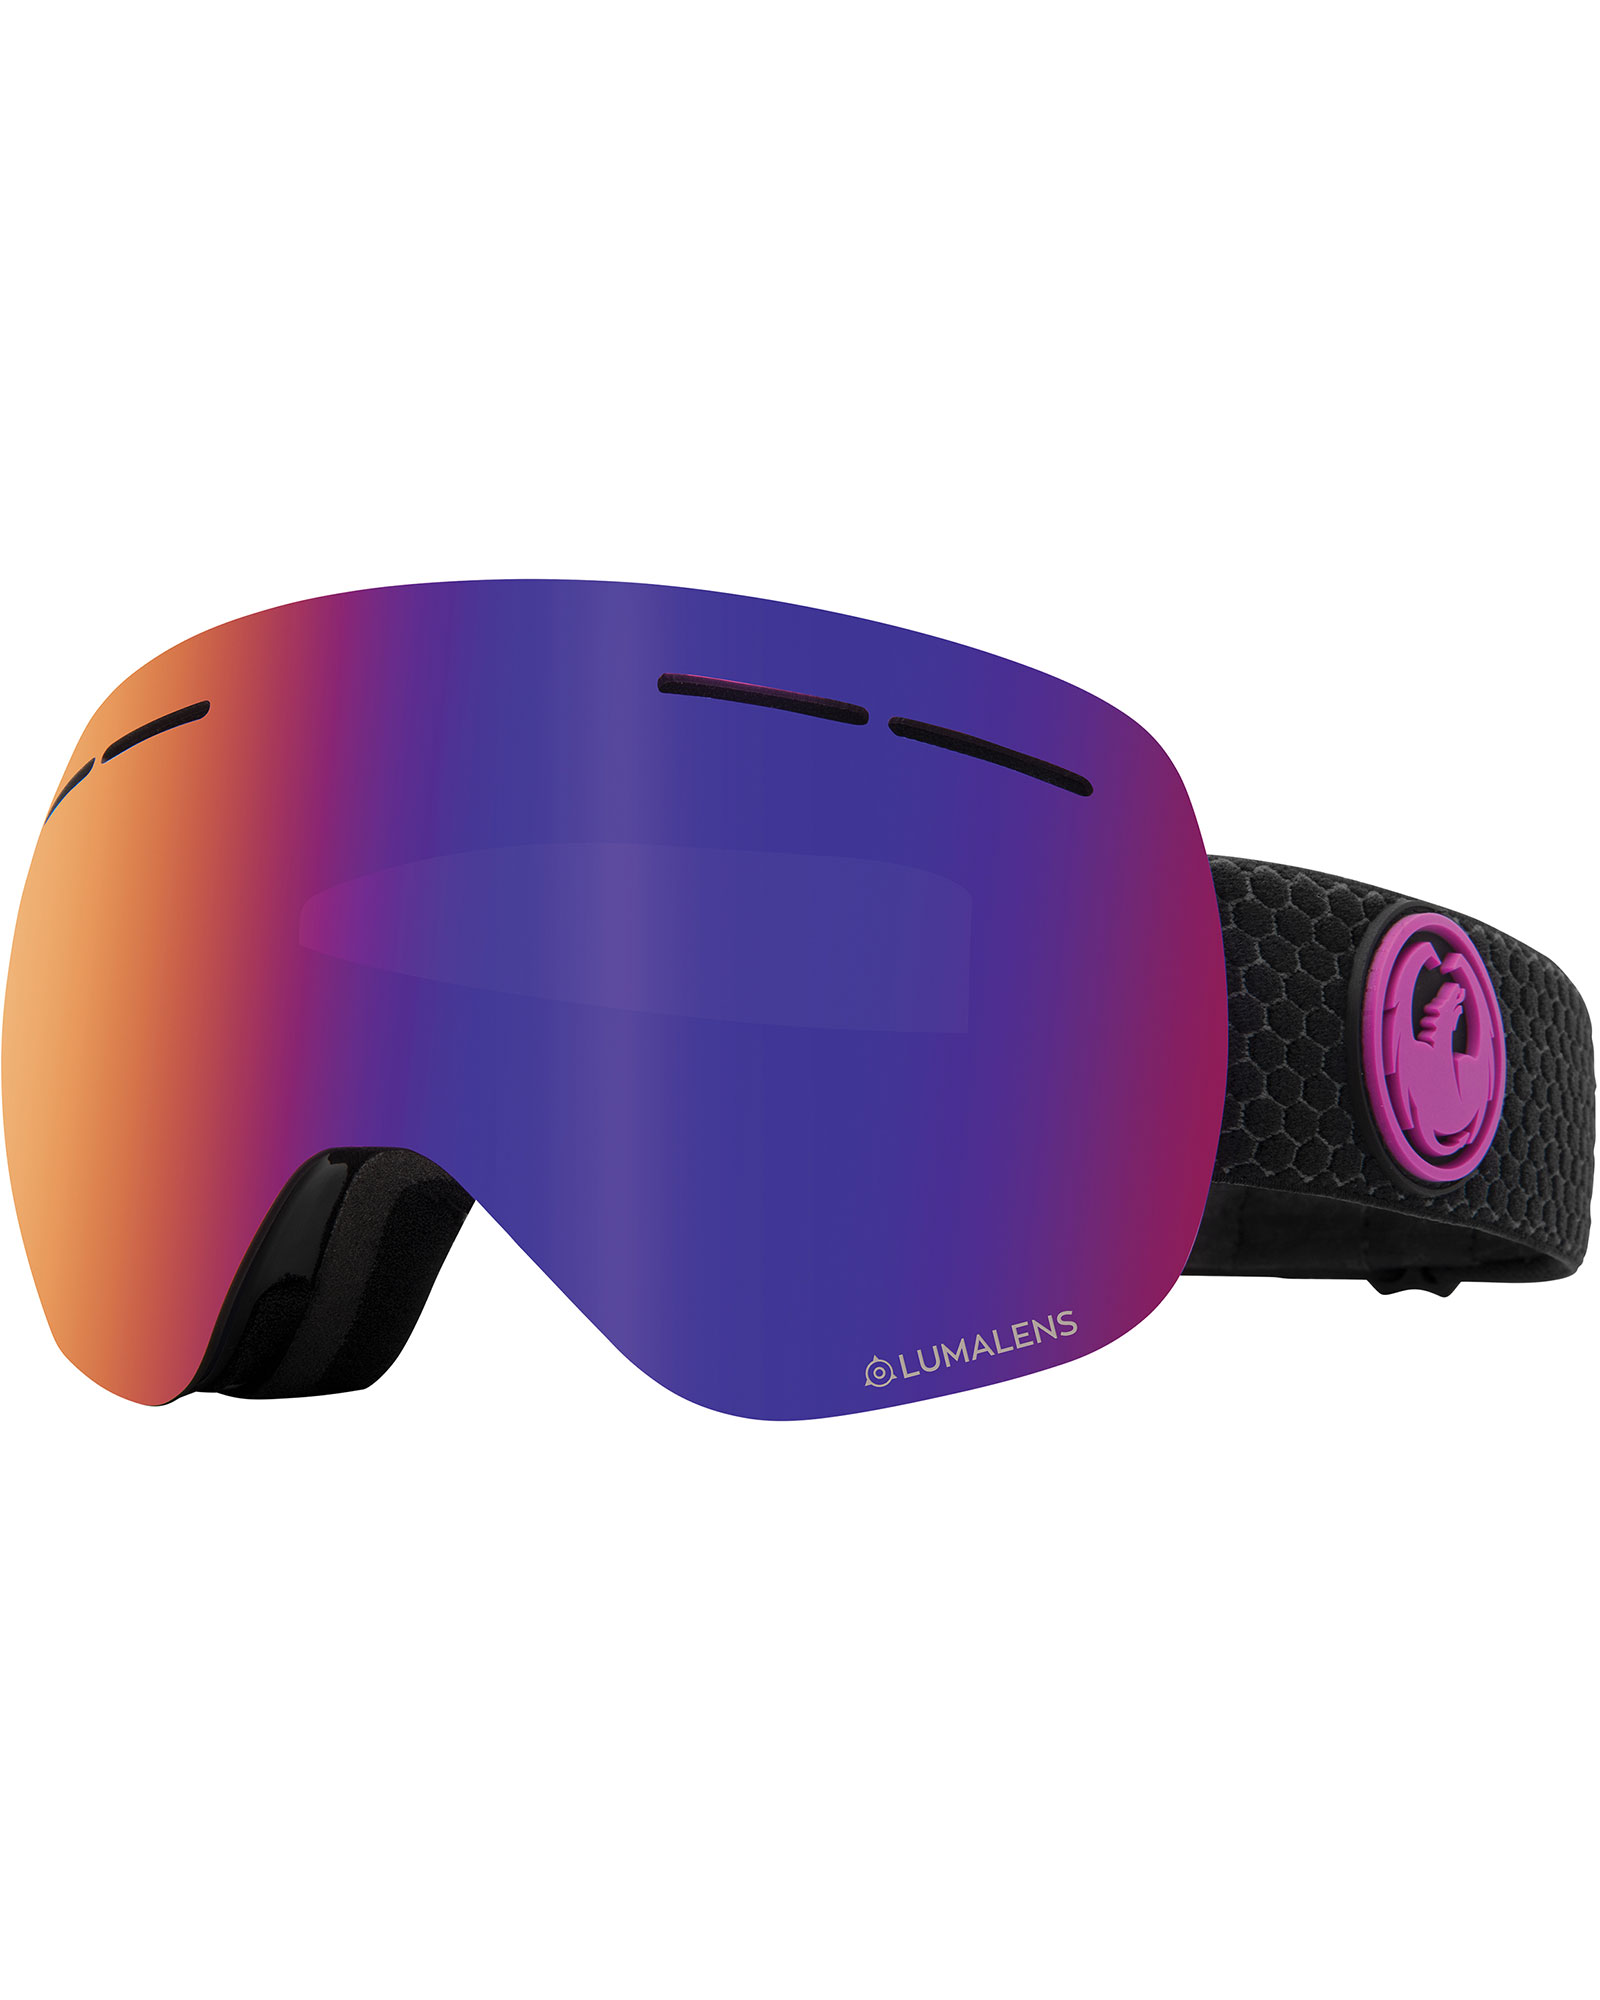 Dragon X1s Split / Lumalens Purple Ionized + Lumalens Amber Goggles